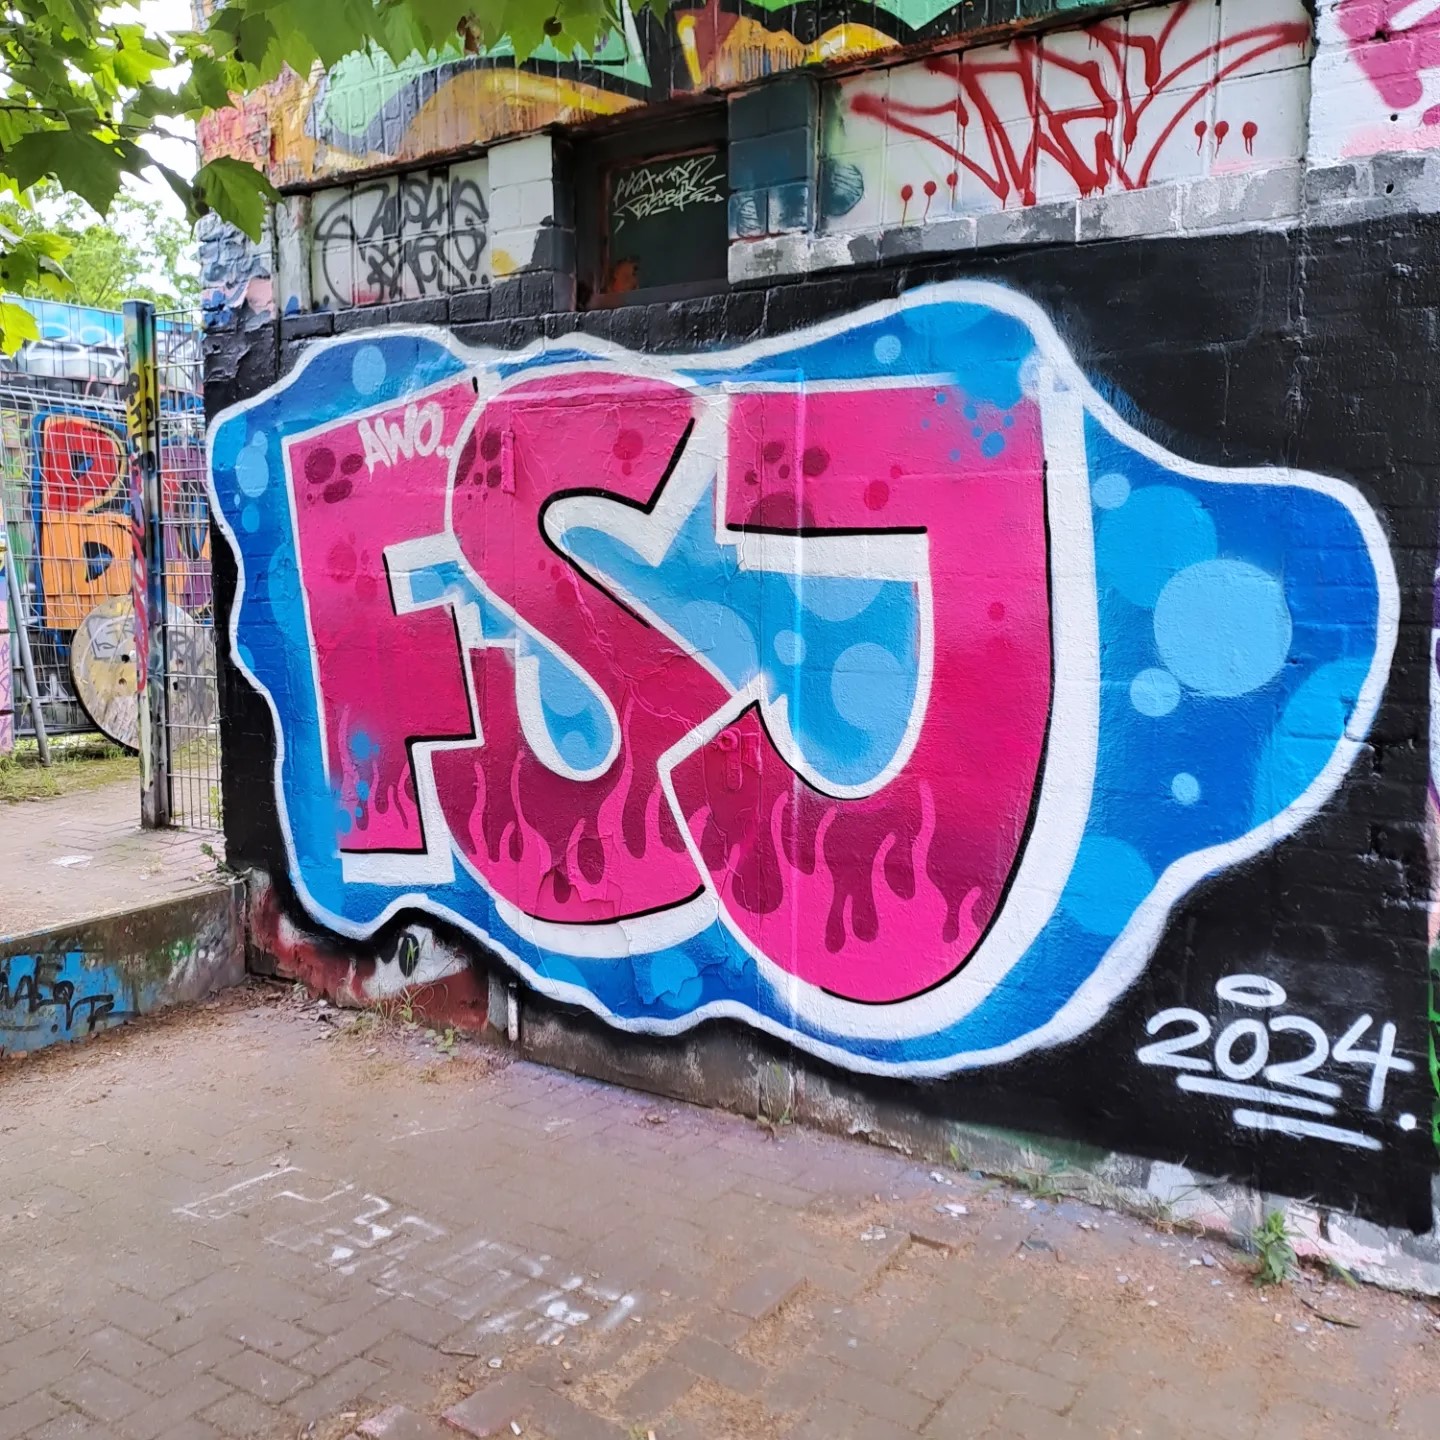 Das Foto zeigt ein Graffiti auf einer Wand. Das Graffiti besteht aus stilisierten Buchstaben, die “FSJ” in großen, blasenartigen Zeichen mit einem 3D-Effekt buchstabieren. Die Buchstaben sind hauptsächlich in Blau- und Pinktönen gemalt, mit weißen Highlights, die den Eindruck von Glanz oder Reflexion erwecken. Unter den Buchstaben befindet sich eine kleinere Inschrift, die “2024” lautet. Die Hintergrundwand ist mit verschiedenen anderen Graffiti-Tags und Markierungen bedeckt, was eine vielschichtige Textur von Straßenkunst erzeugt.